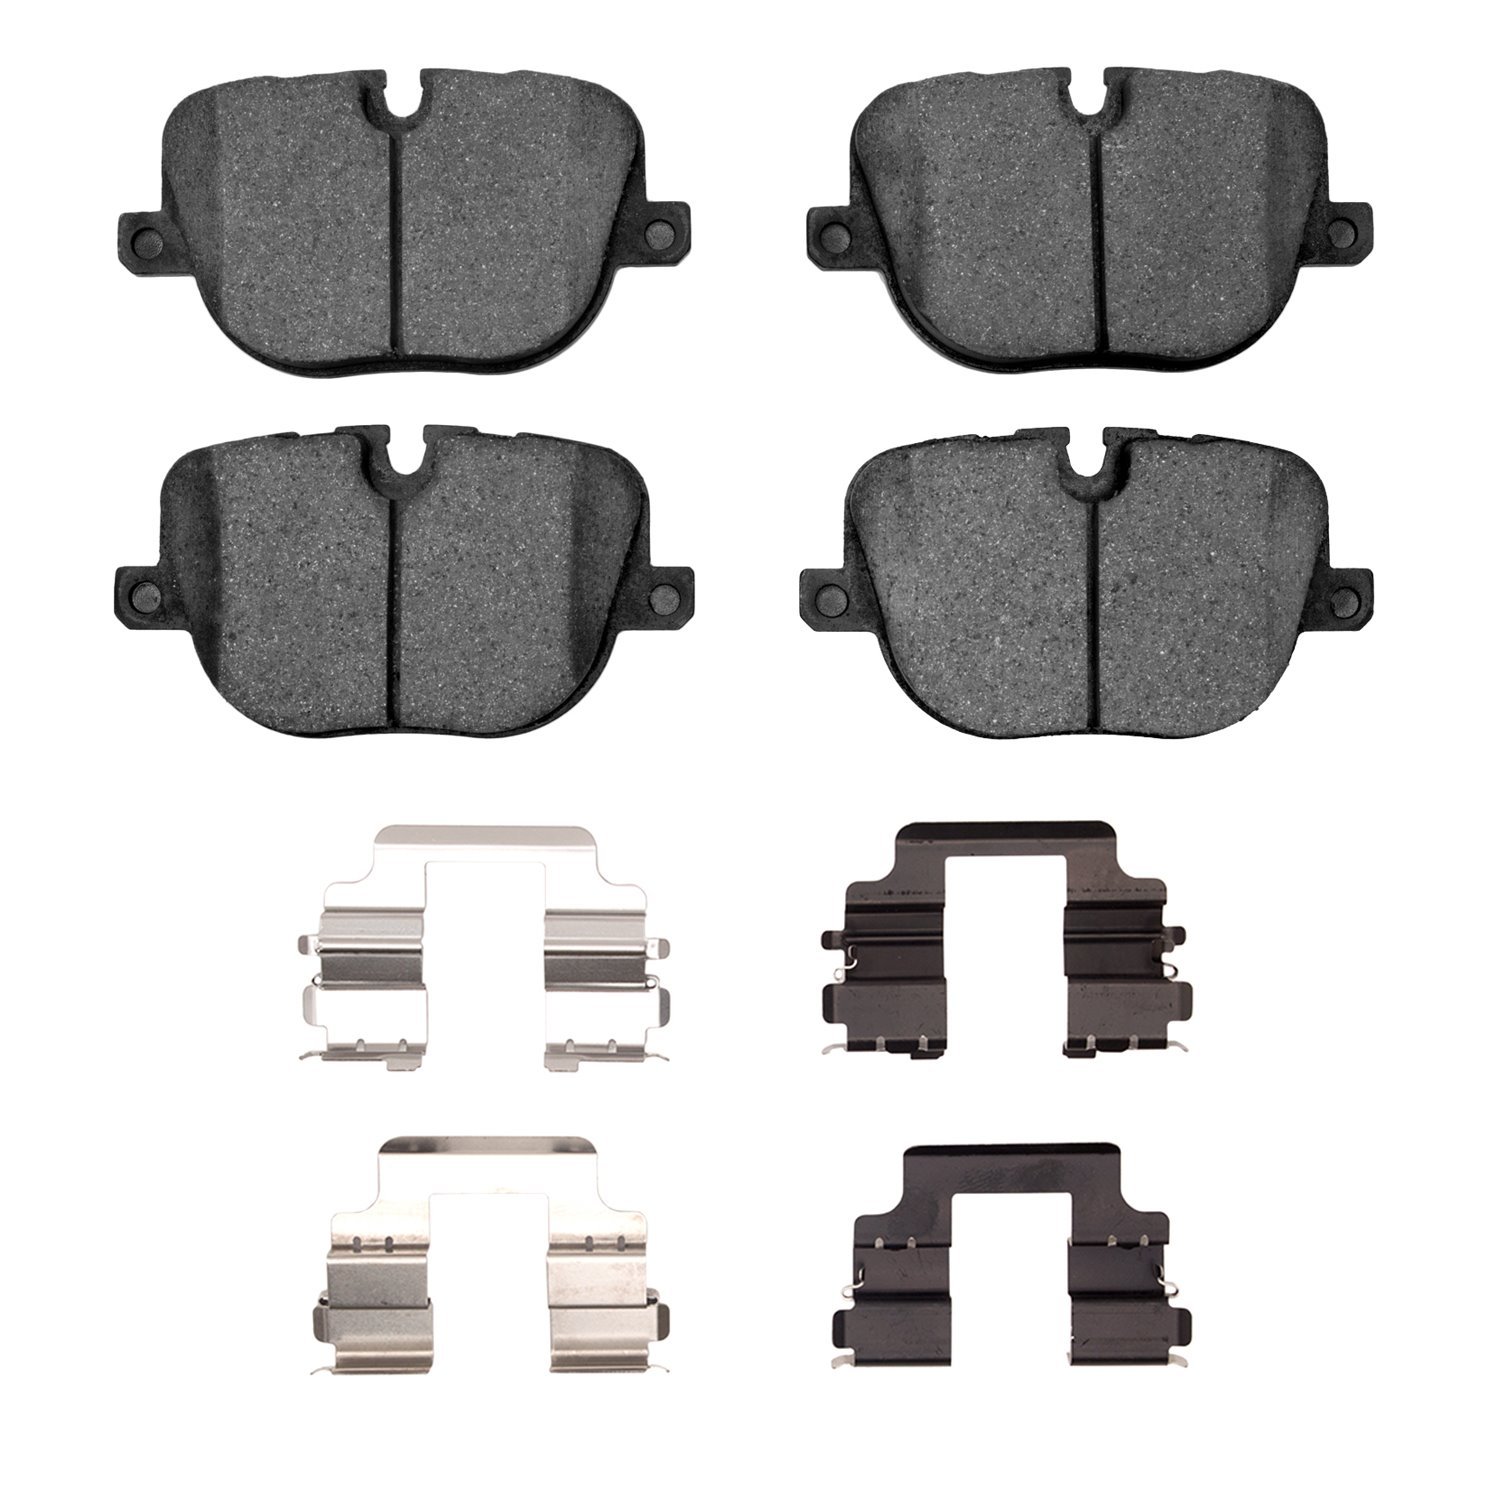 1551-1427-01 5000 Advanced Low-Metallic Brake Pads & Hardware Kit, 2010-2013 Land Rover, Position: Rear